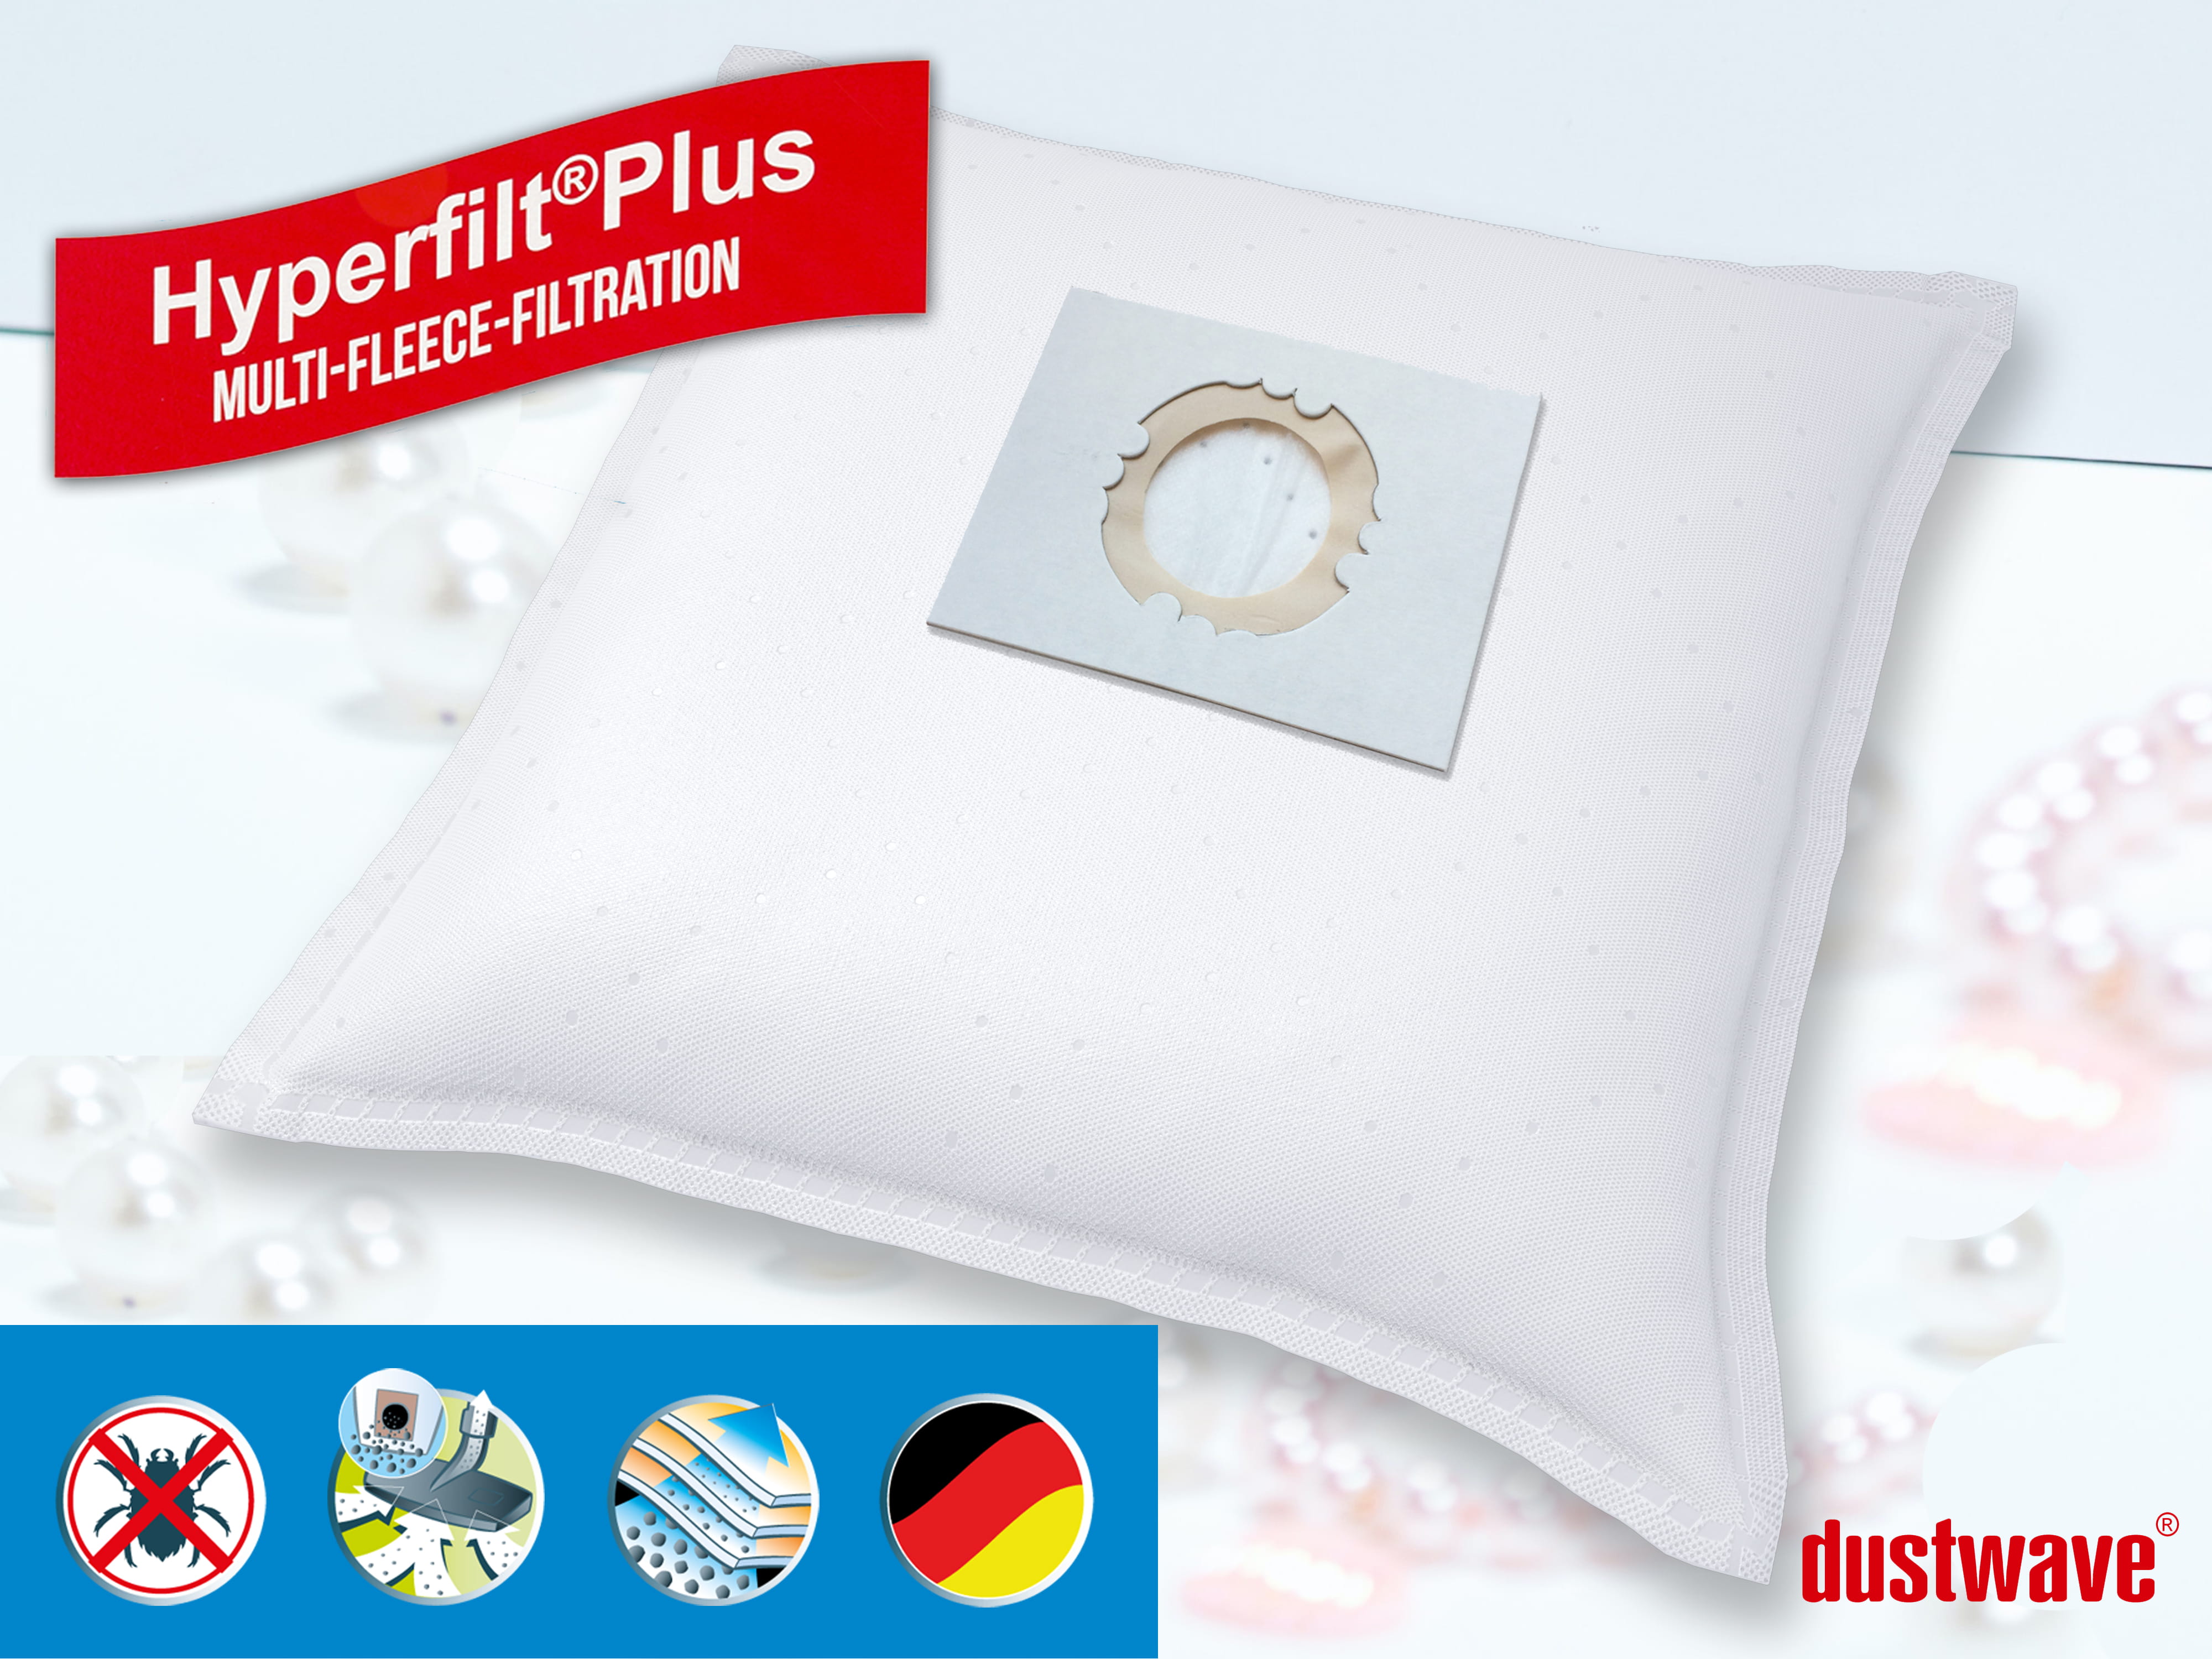 Dustwave® 10 Staubsaugerbeutel für Hoover BD S6145 - hocheffizient, mehrlagiges Mikrovlies mit Hygieneverschluss - Made in Germany